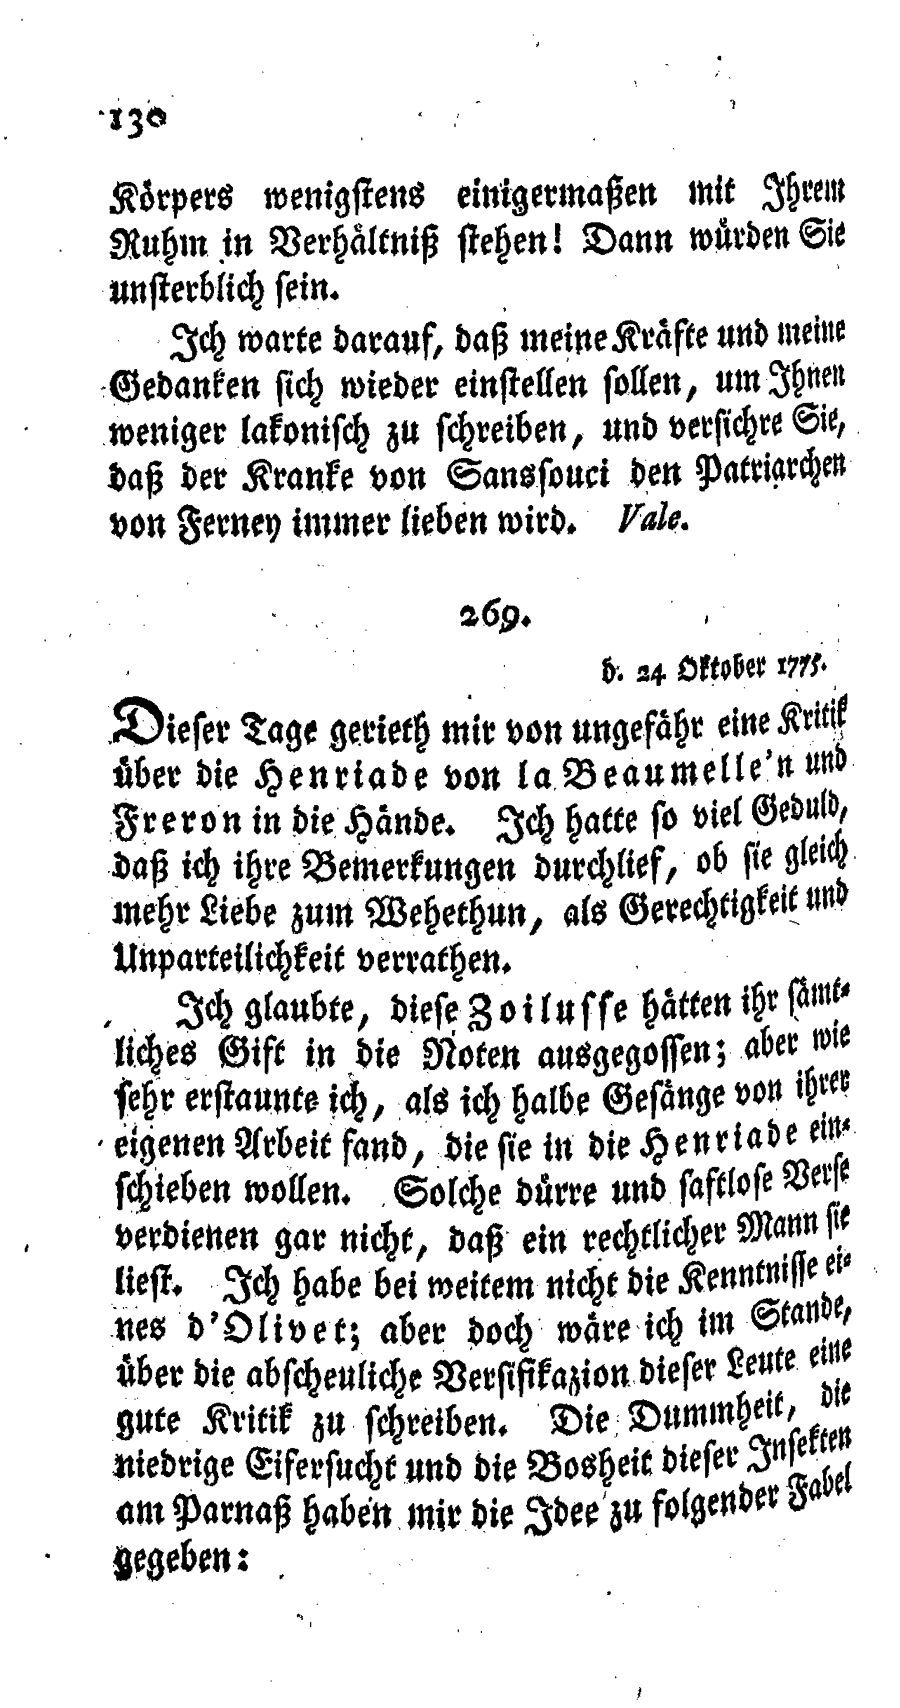 S. 130, Obj. 2